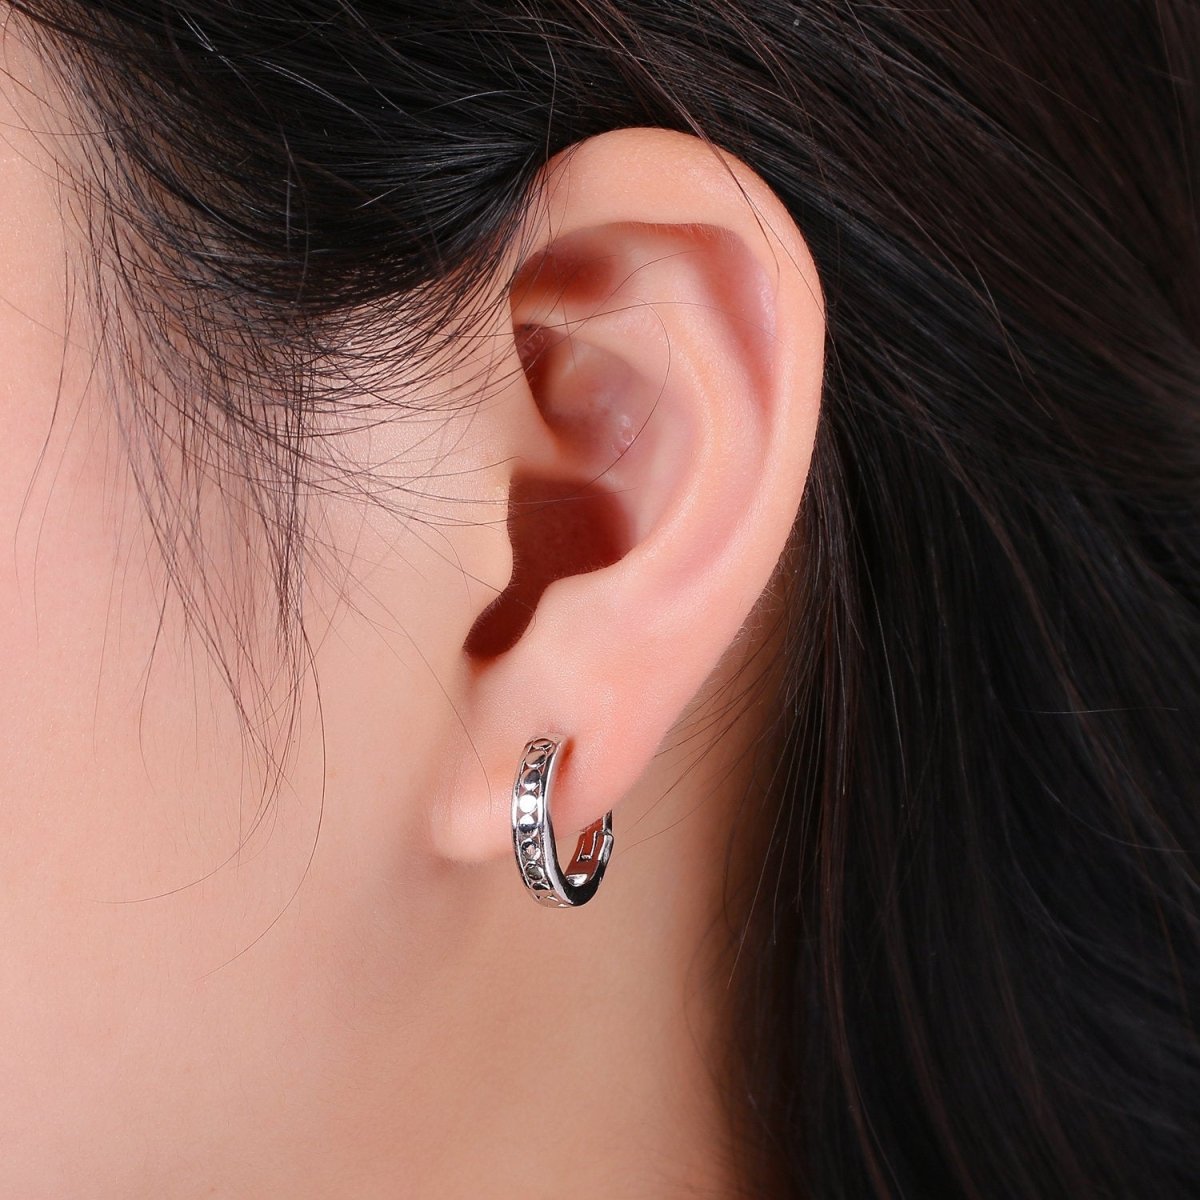 24k Vermeil Gold Earrings, Huggie Earring, Tiny Earrings, Circle Earrings, Handmade Earrings, Everyday Wear Earrings, Rosegold Earring K-696 - K-698 - DLUXCA